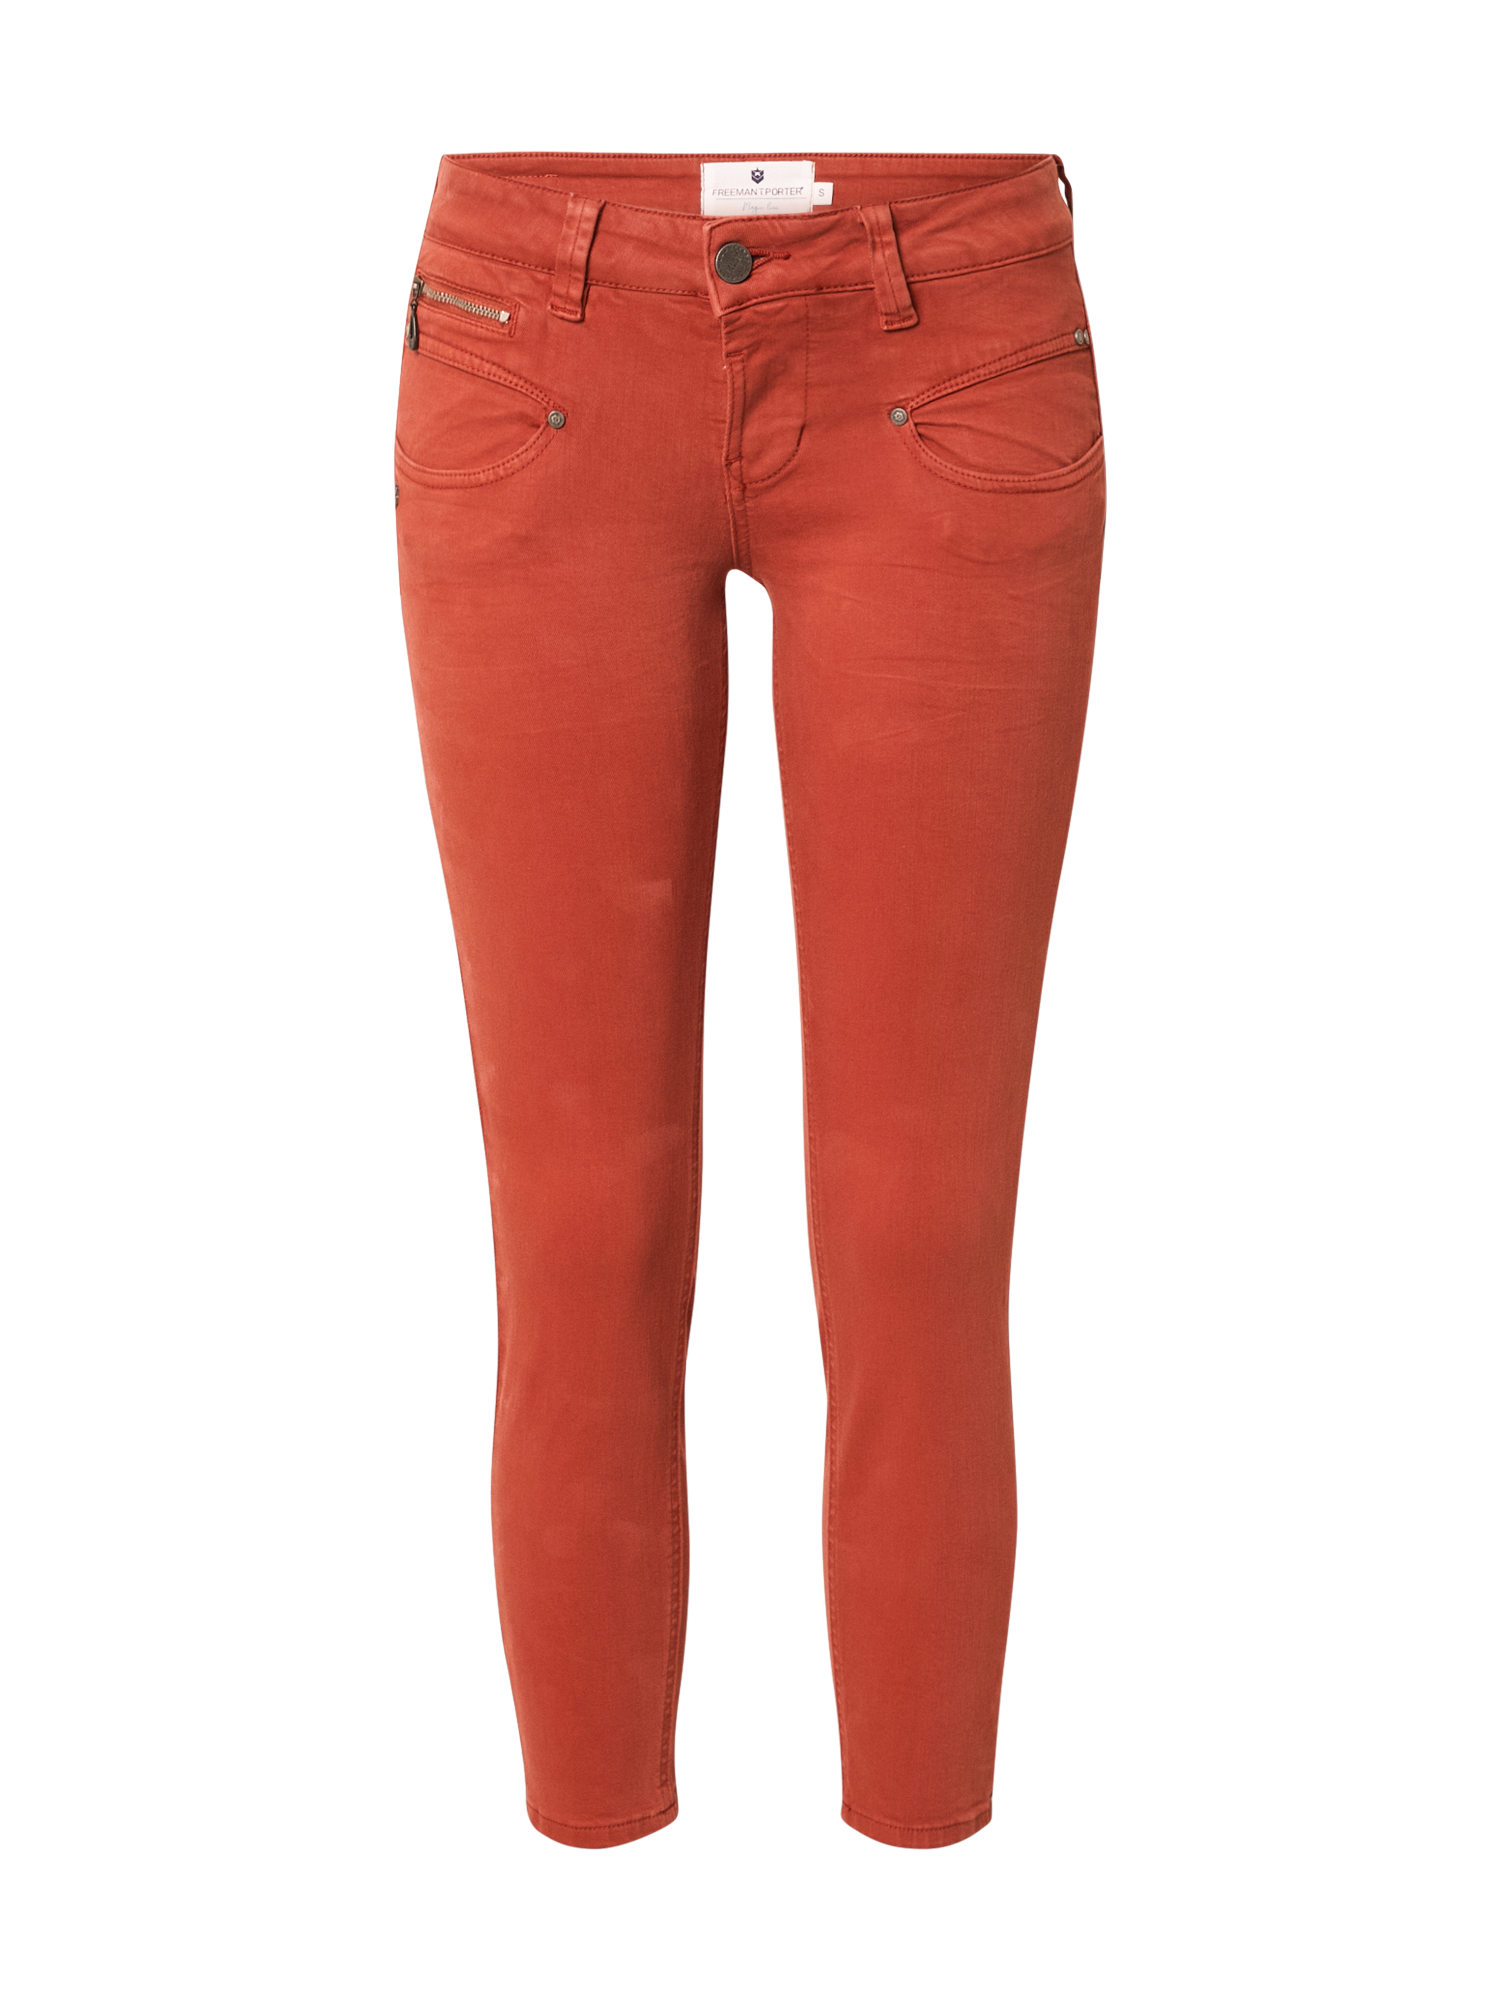 Kobiety cwPGP FREEMAN T. PORTER Spodnie Alexa w kolorze Czerwonym 